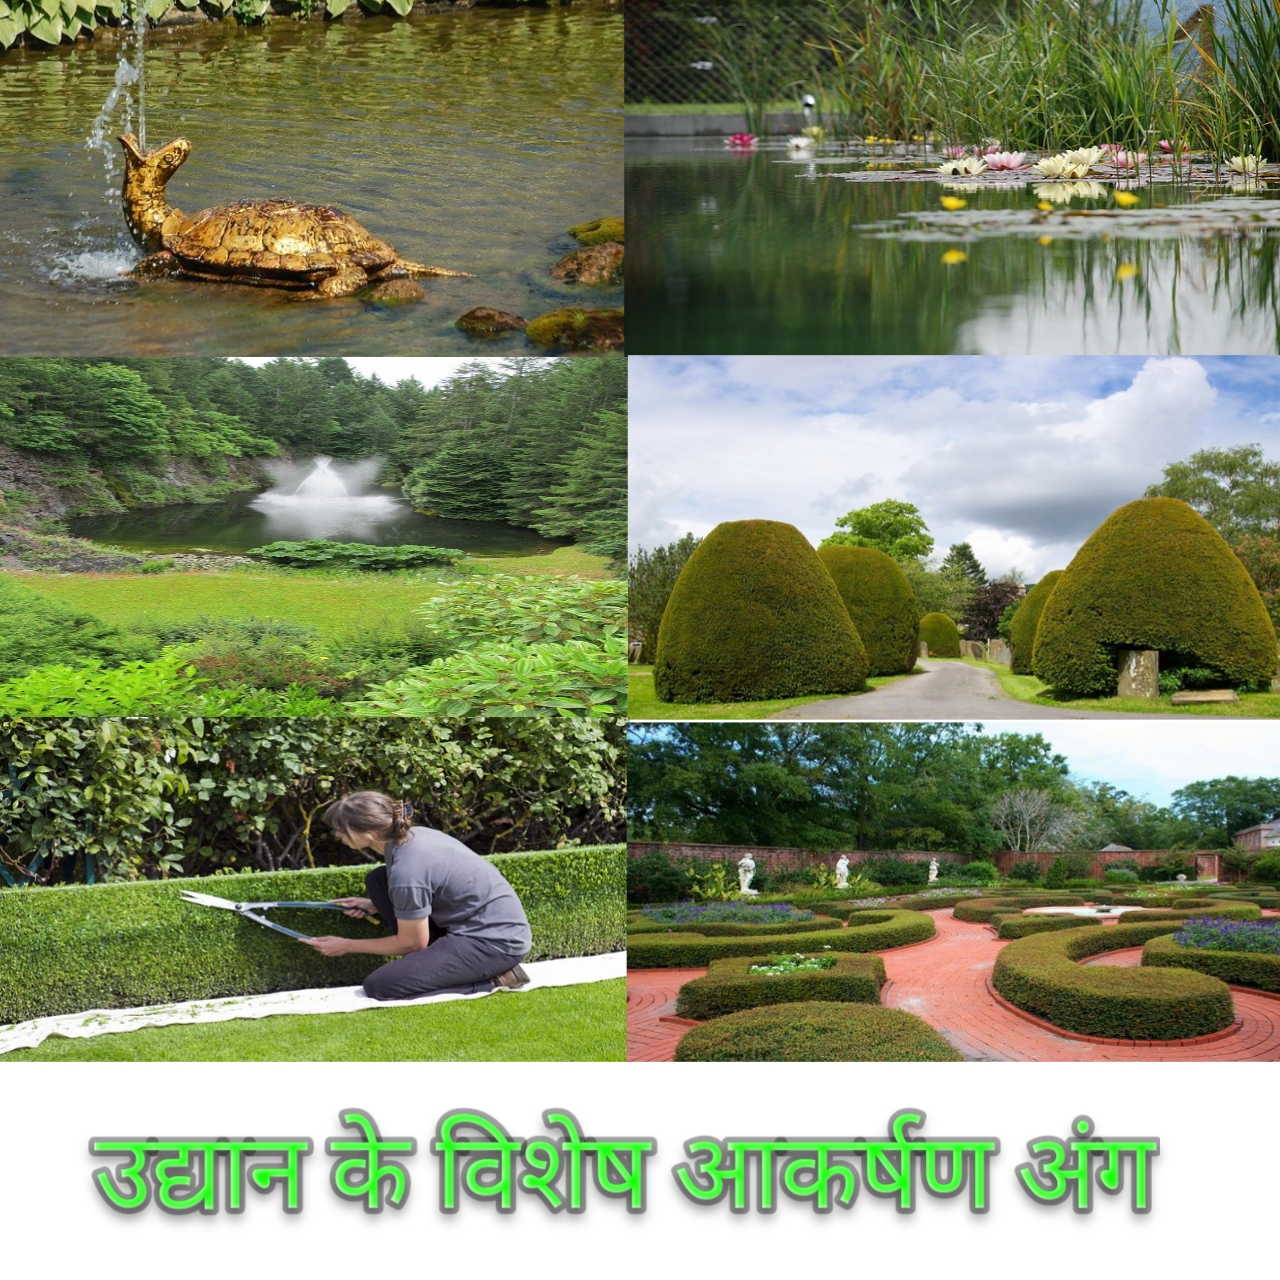 उद्यान के विशेष आकर्षण अंग हिन्दी में Special Attractions of the Garden in hindi